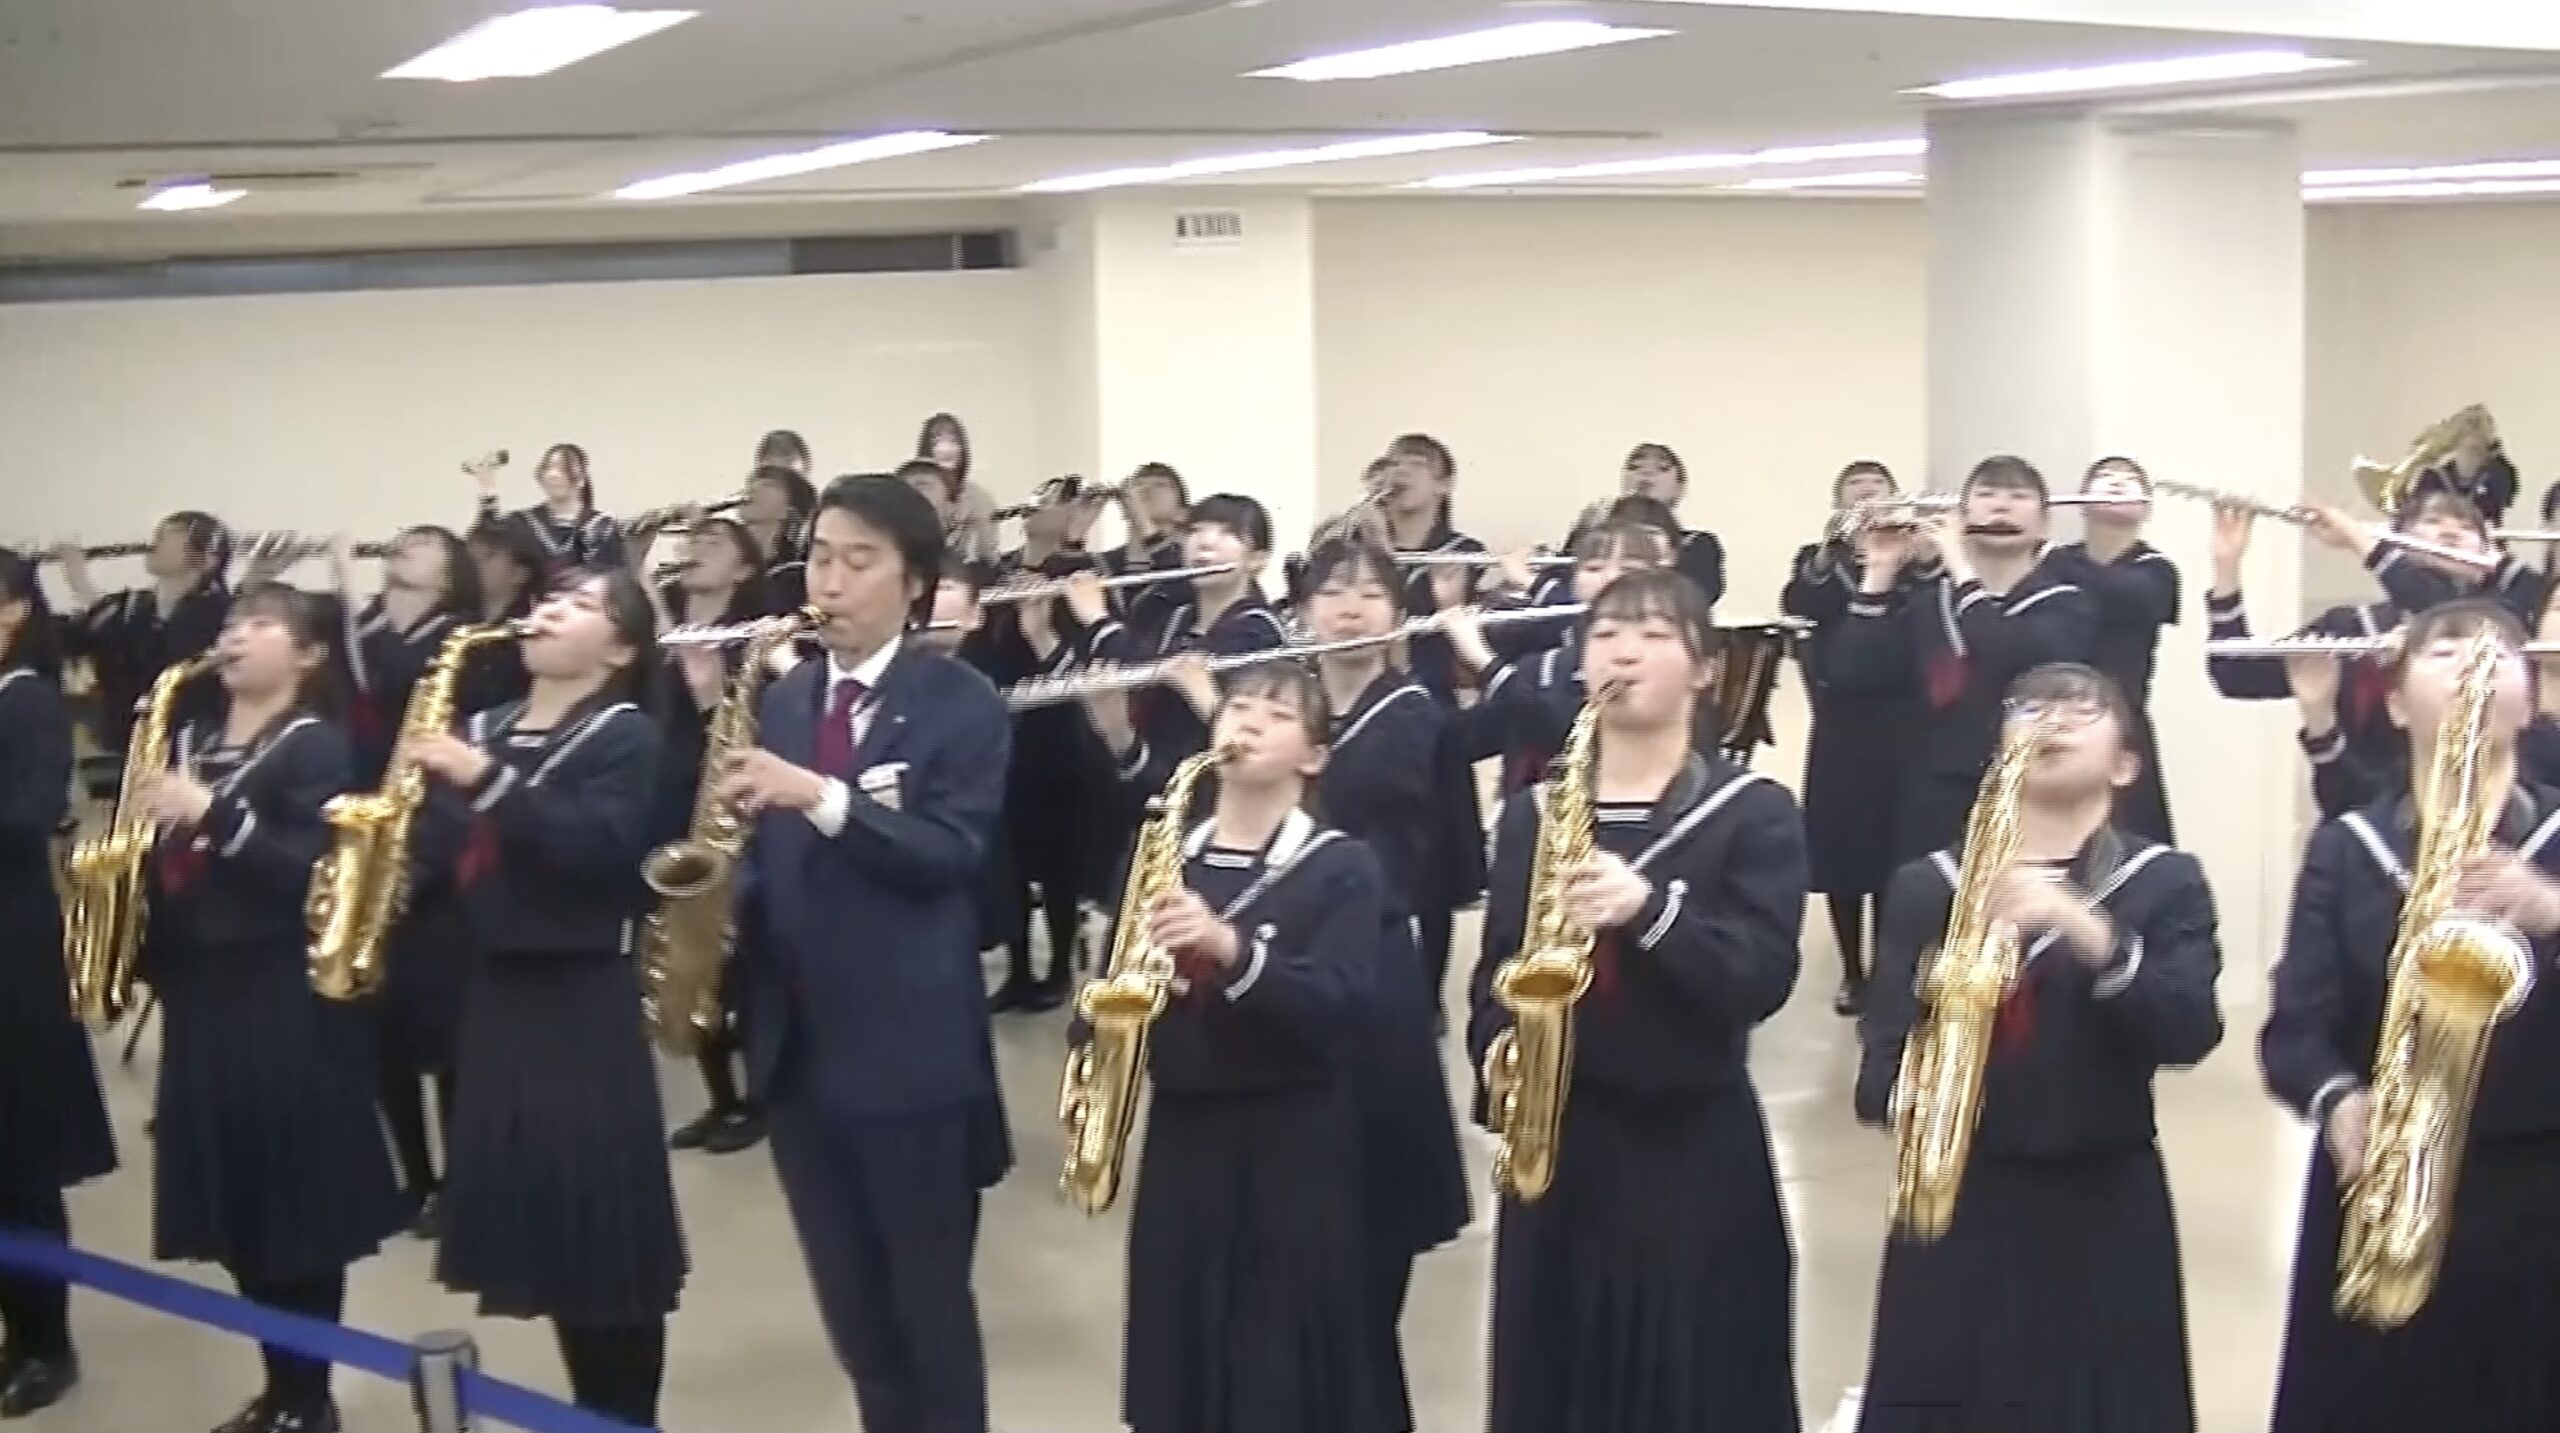 吹奏楽局が丸井今井函館店にてゲリラコンサートを開催しました。とても盛り上がったコンサートになりました🎷